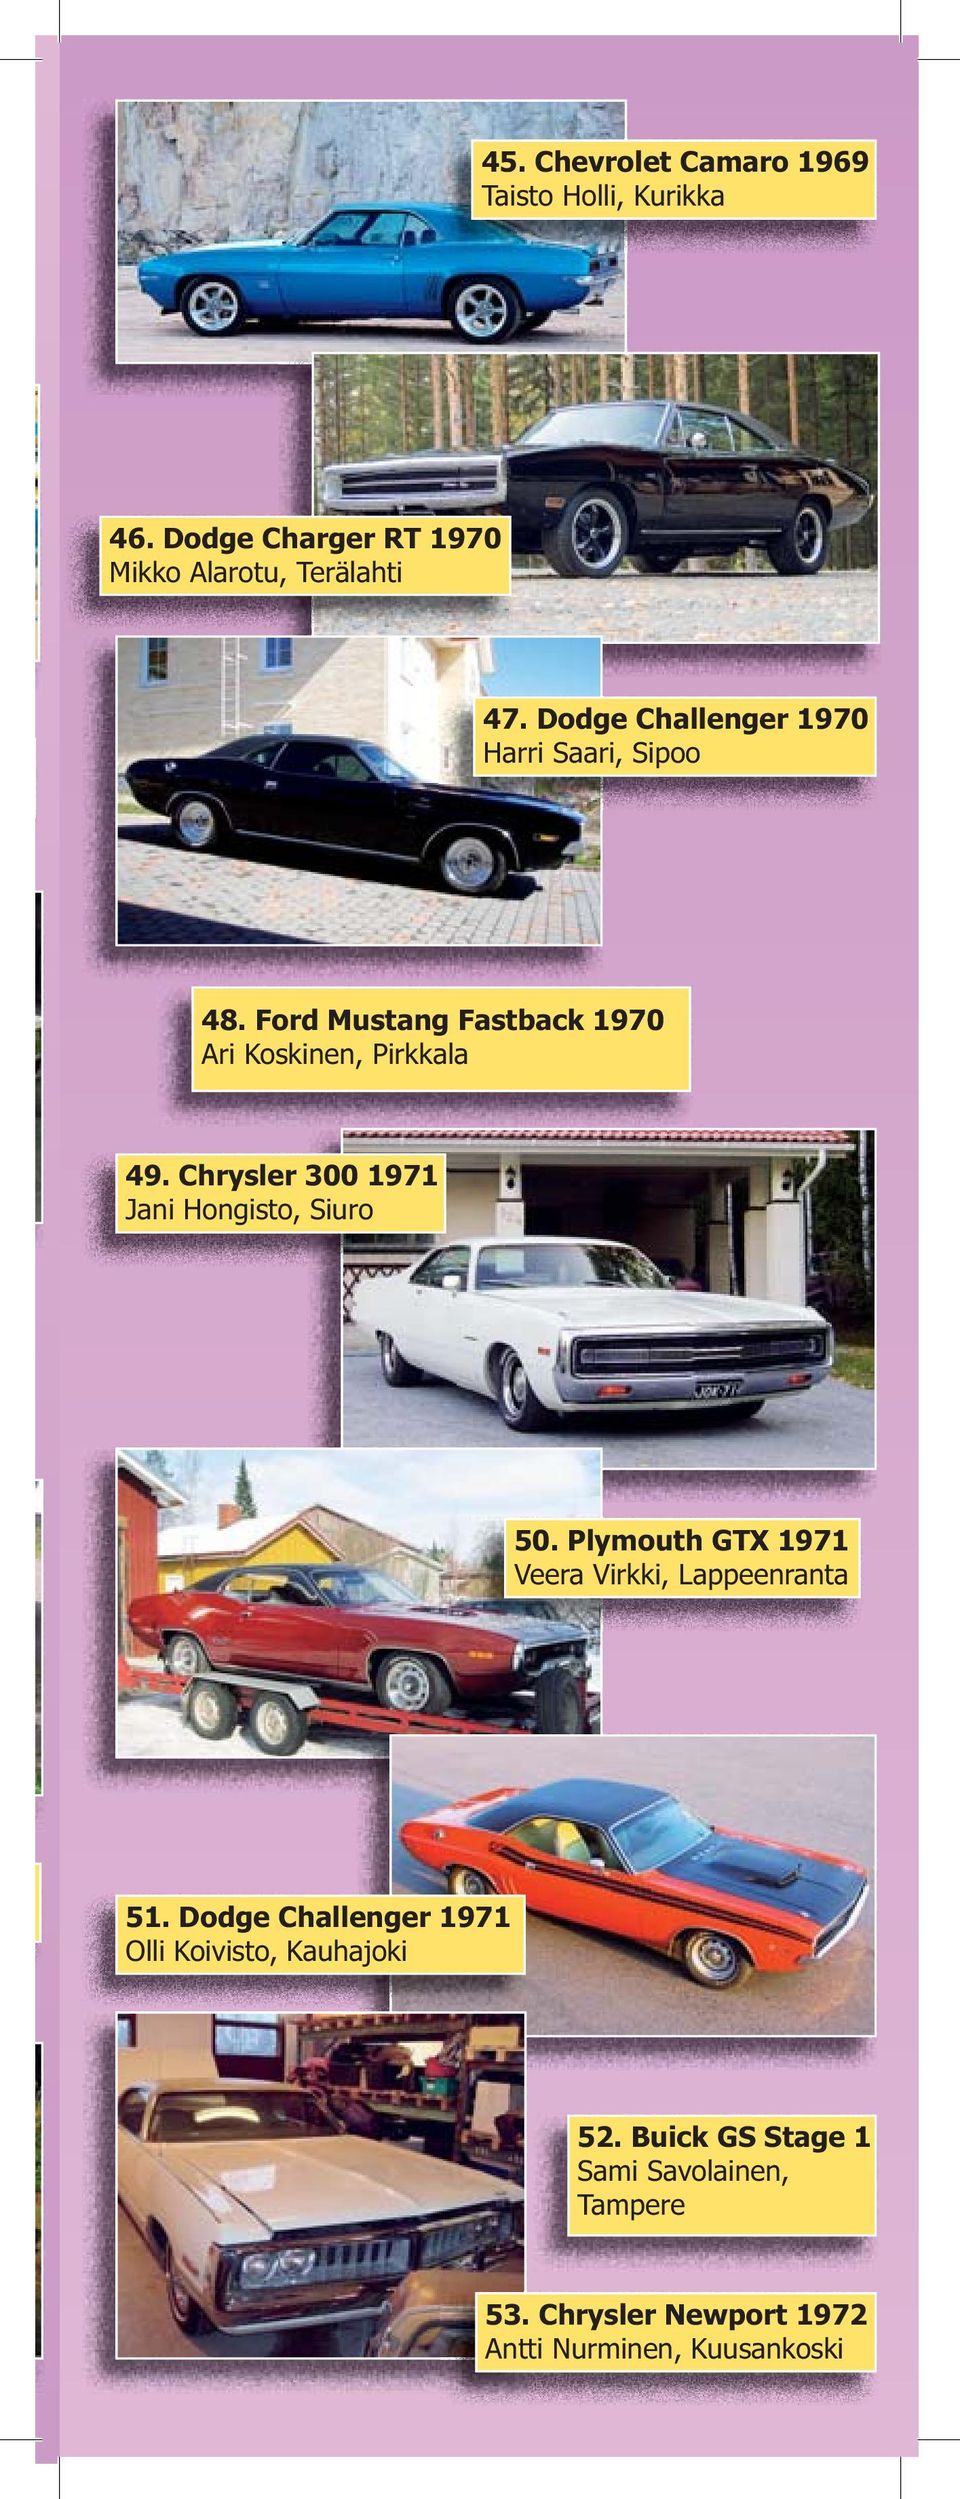 Chrysler 300 1971 Jani Hongisto, Siuro 50. Plymouth GTX 1971 Veera Virkki, Lappeenranta 51.